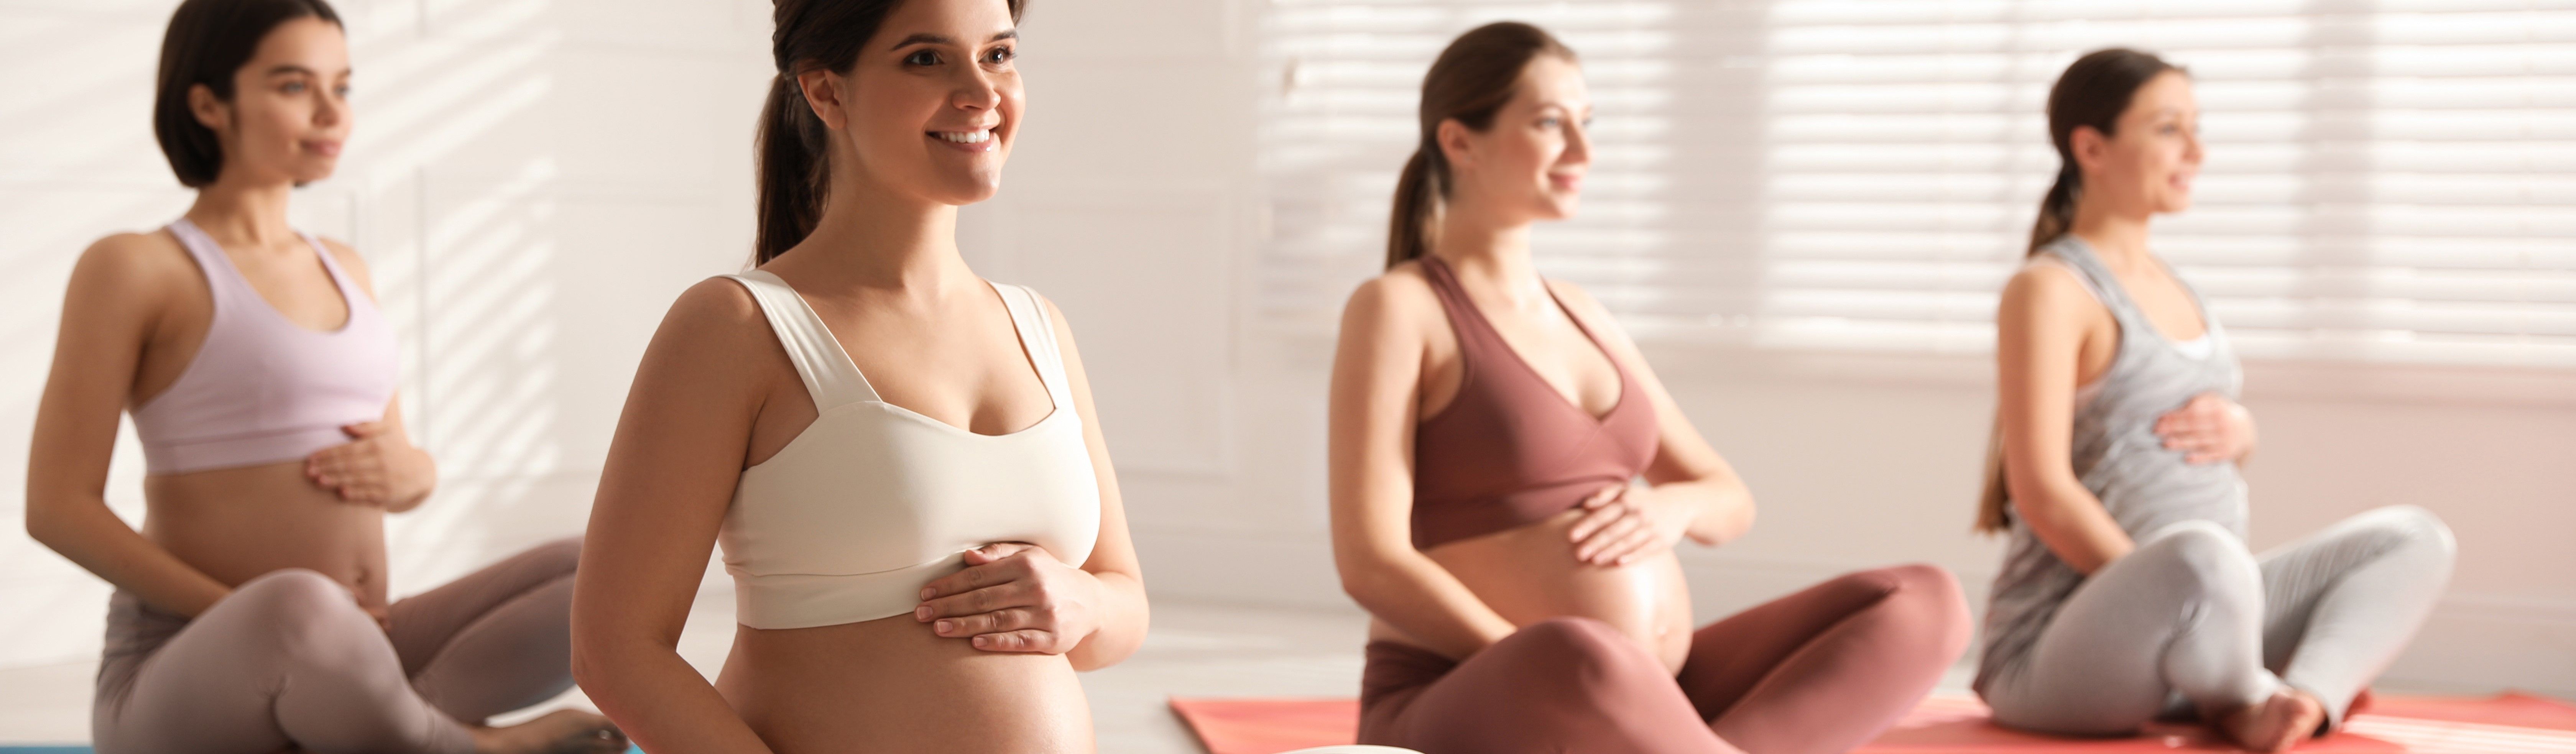 Yoga für Schwangere | Ausbildung zum Yoga Trainer